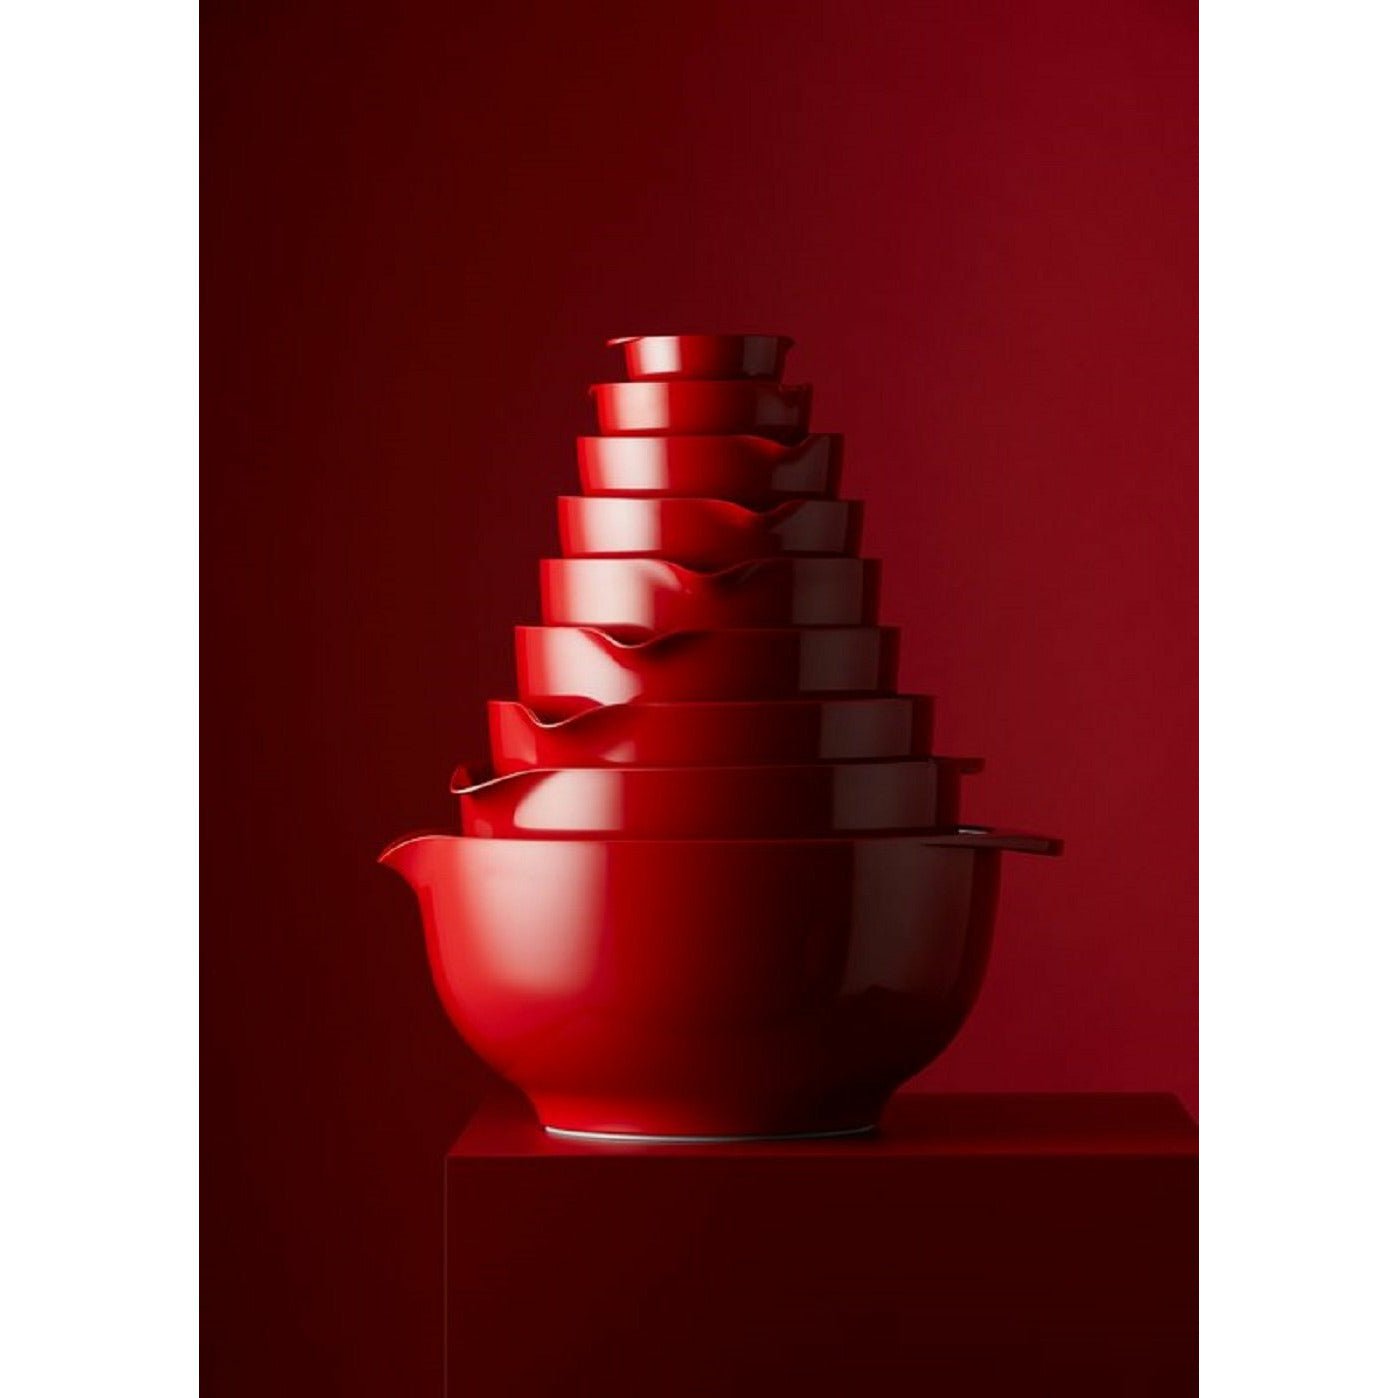 Rosti Margrethe Mixing Bowl czerwony, 5 litrów